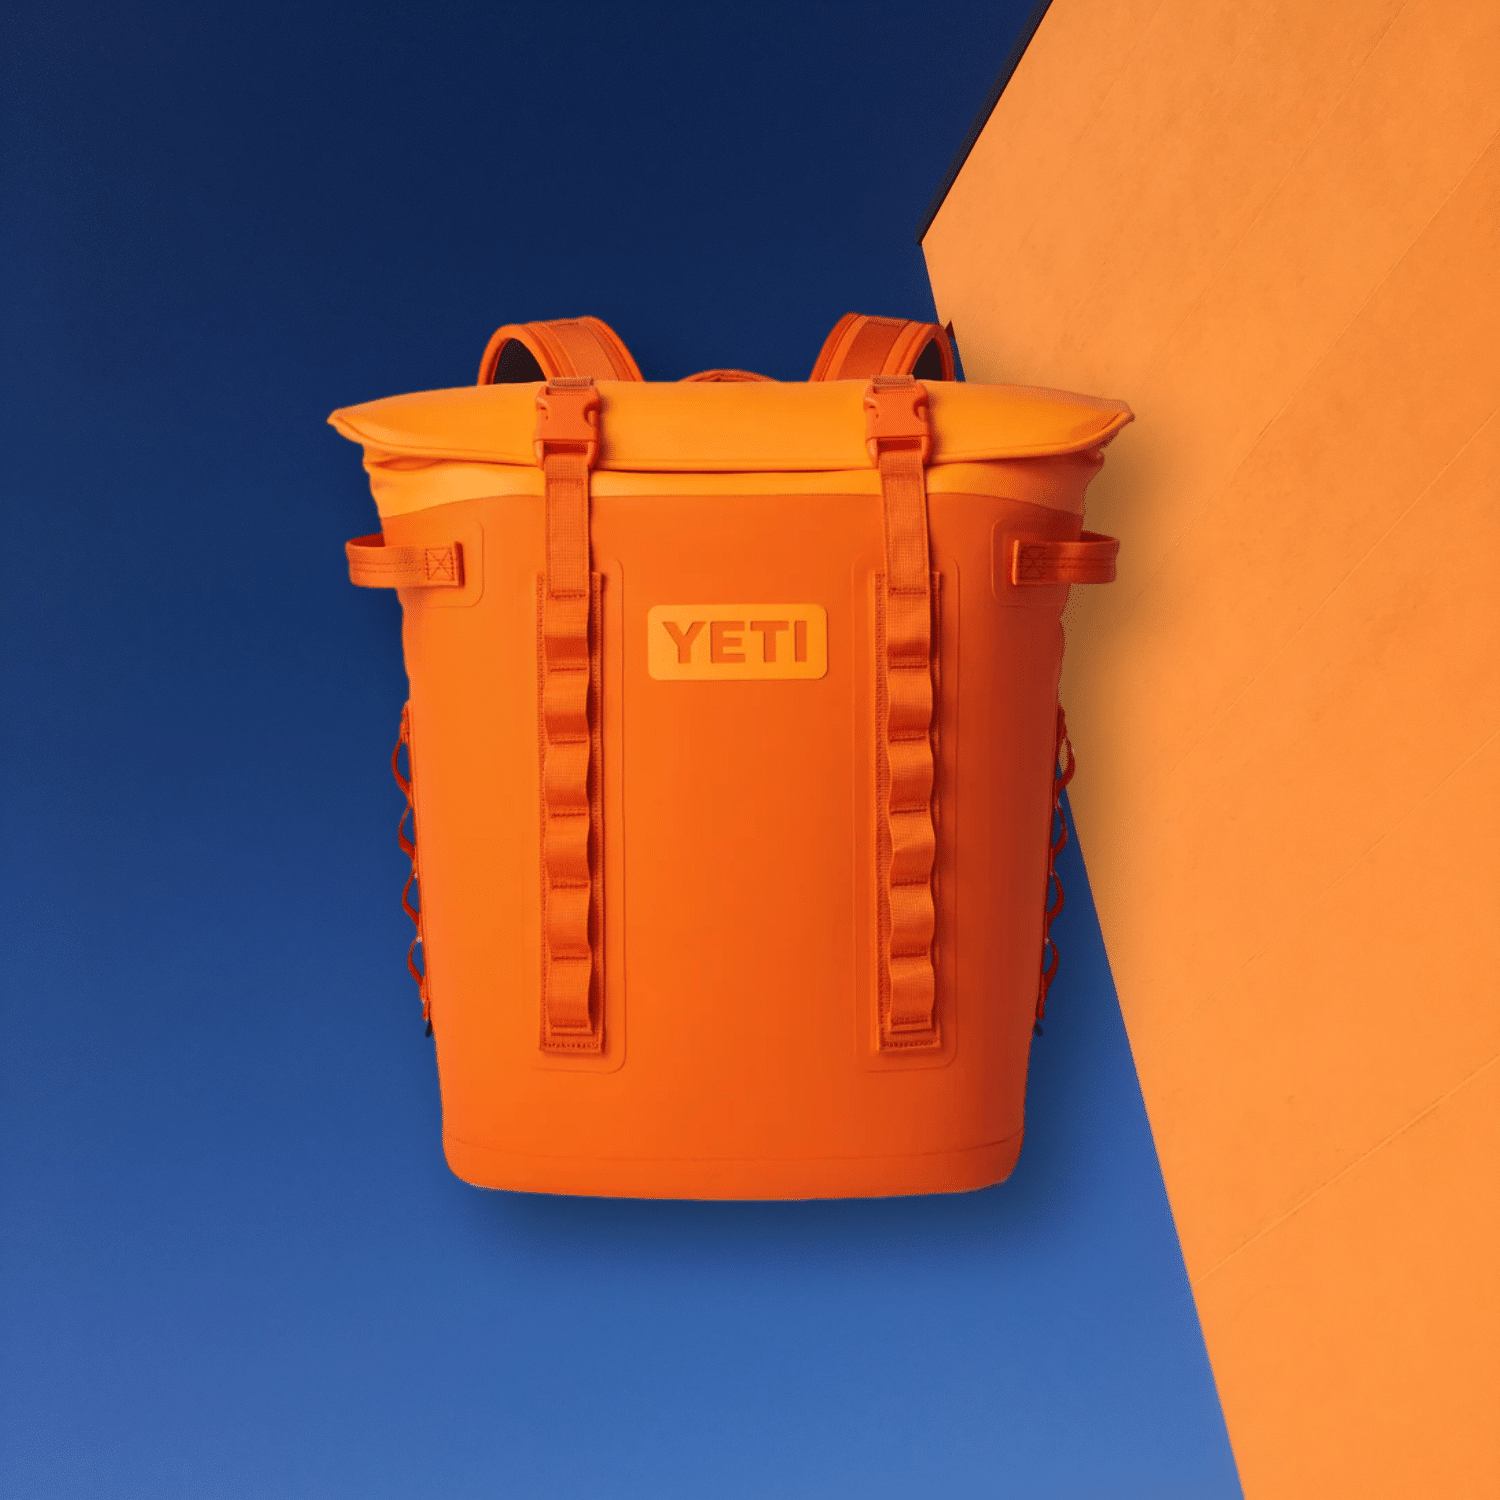 Yeti Hopper M20 Backpack Cooler